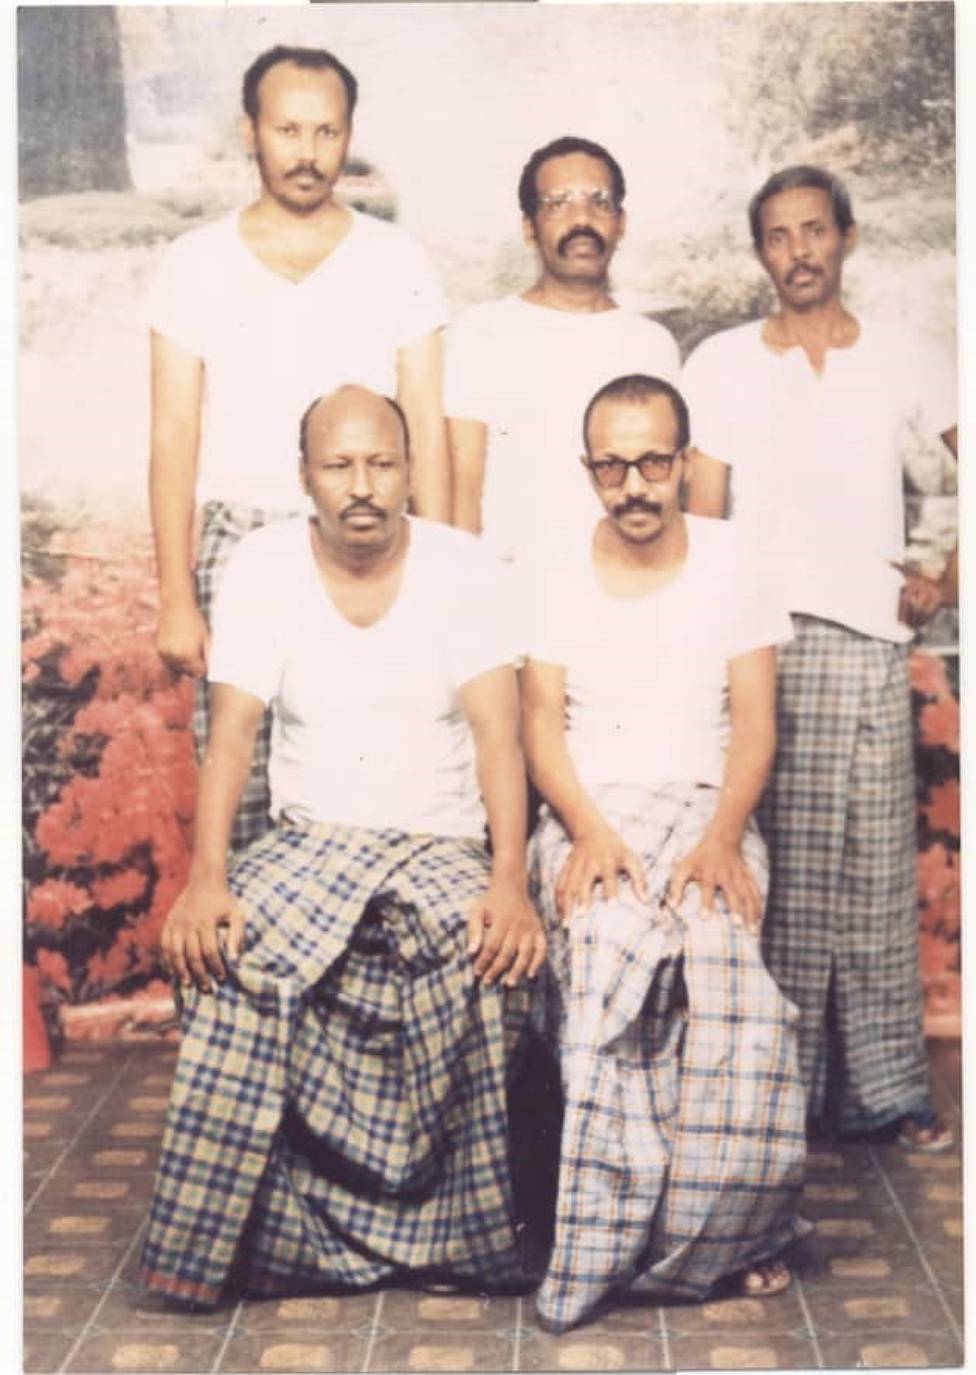 Barud, Abokor y otros tres prisioneros.